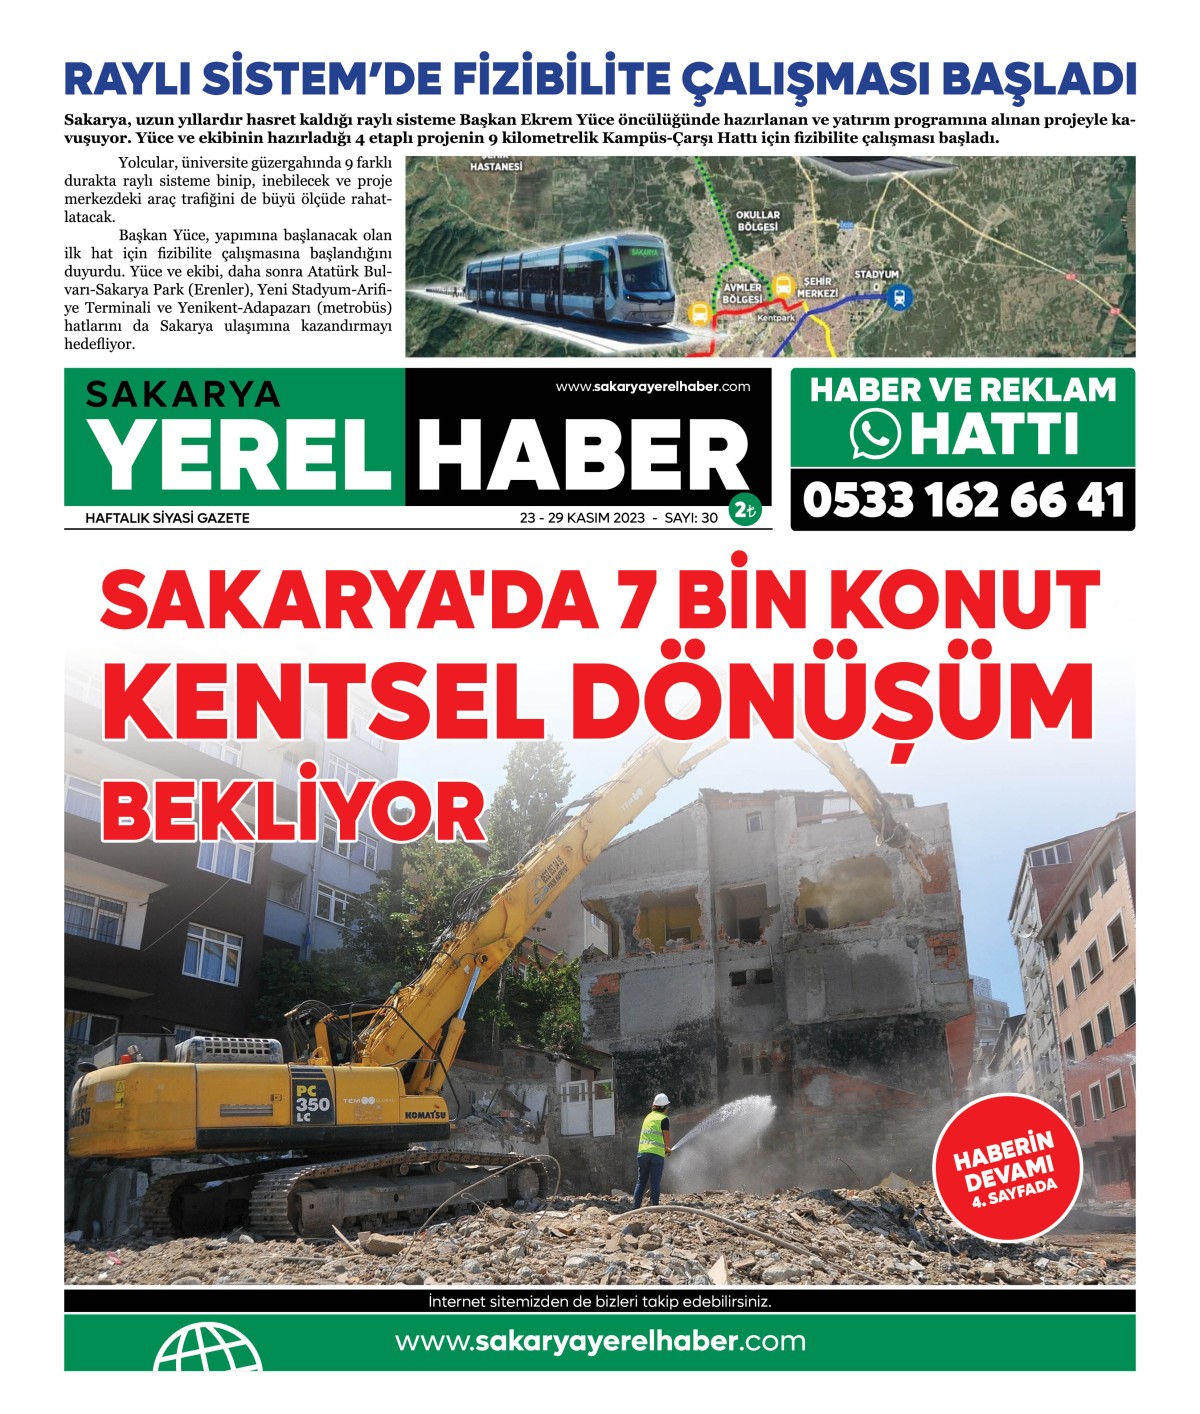 Sakarya Yerel Haber Gazetesi 30.Sayısı Çıktı